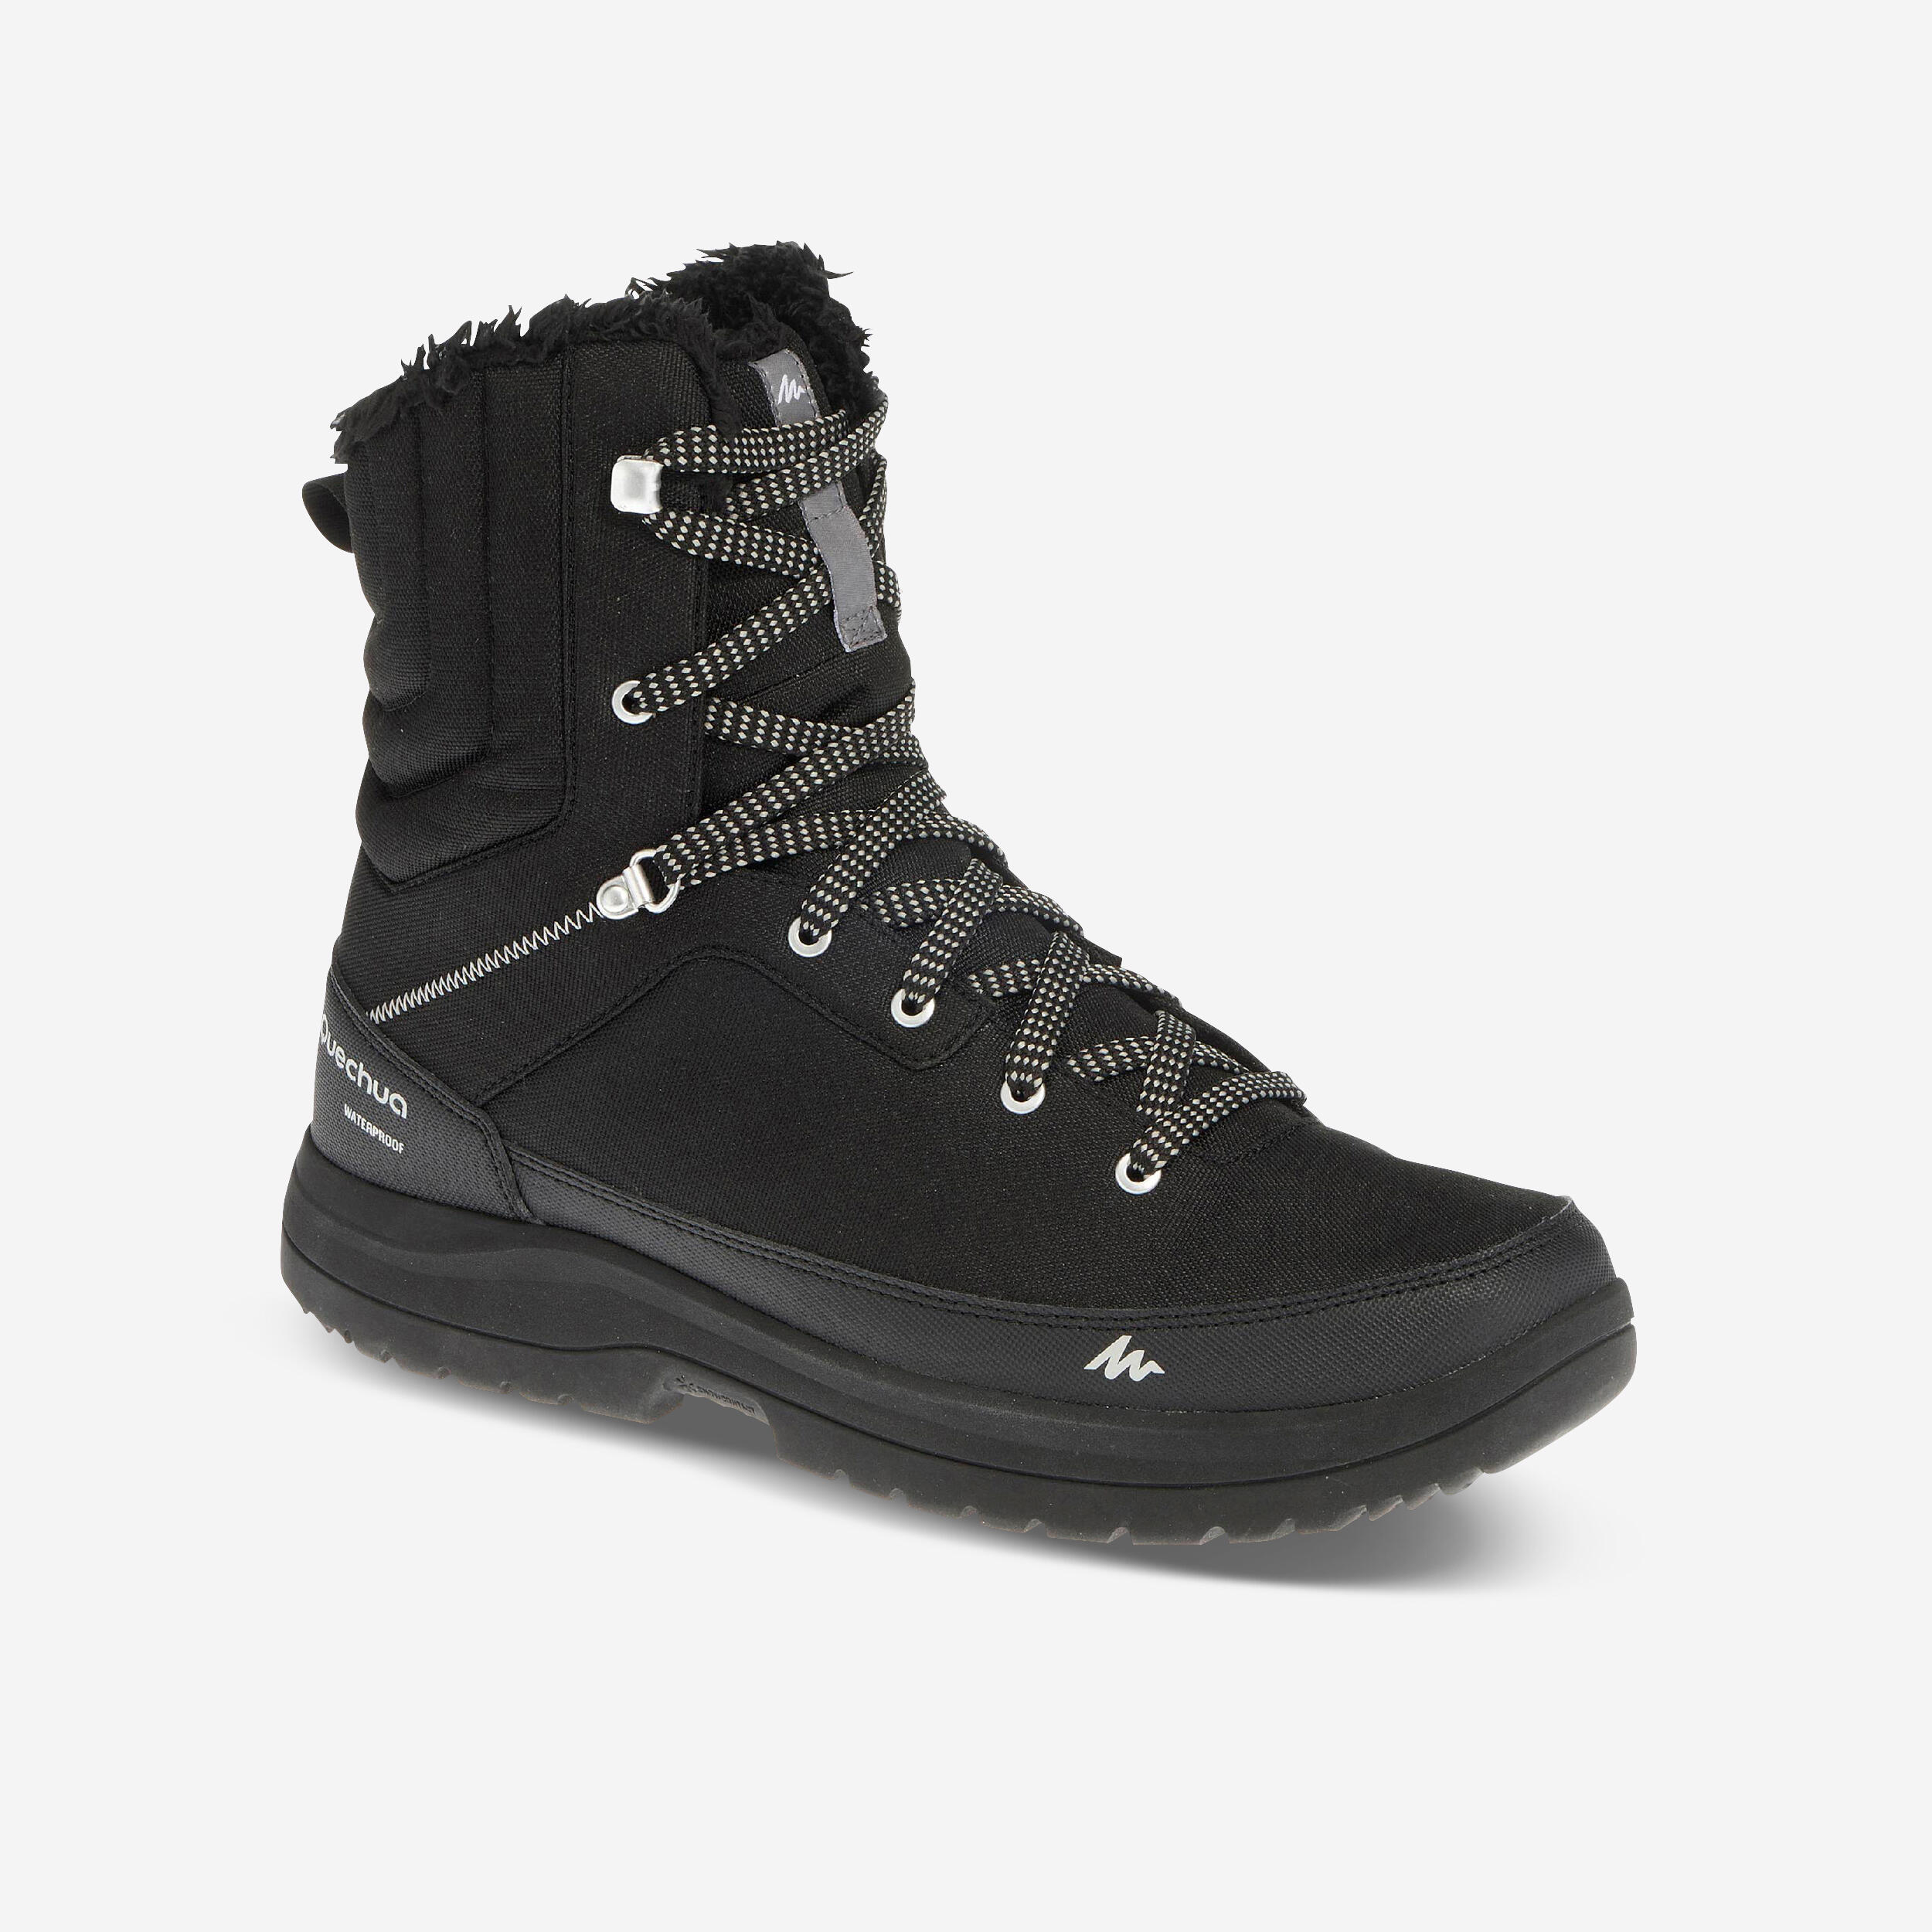 Image of Men’s Waterproof Winter Boots - SH 100 Black